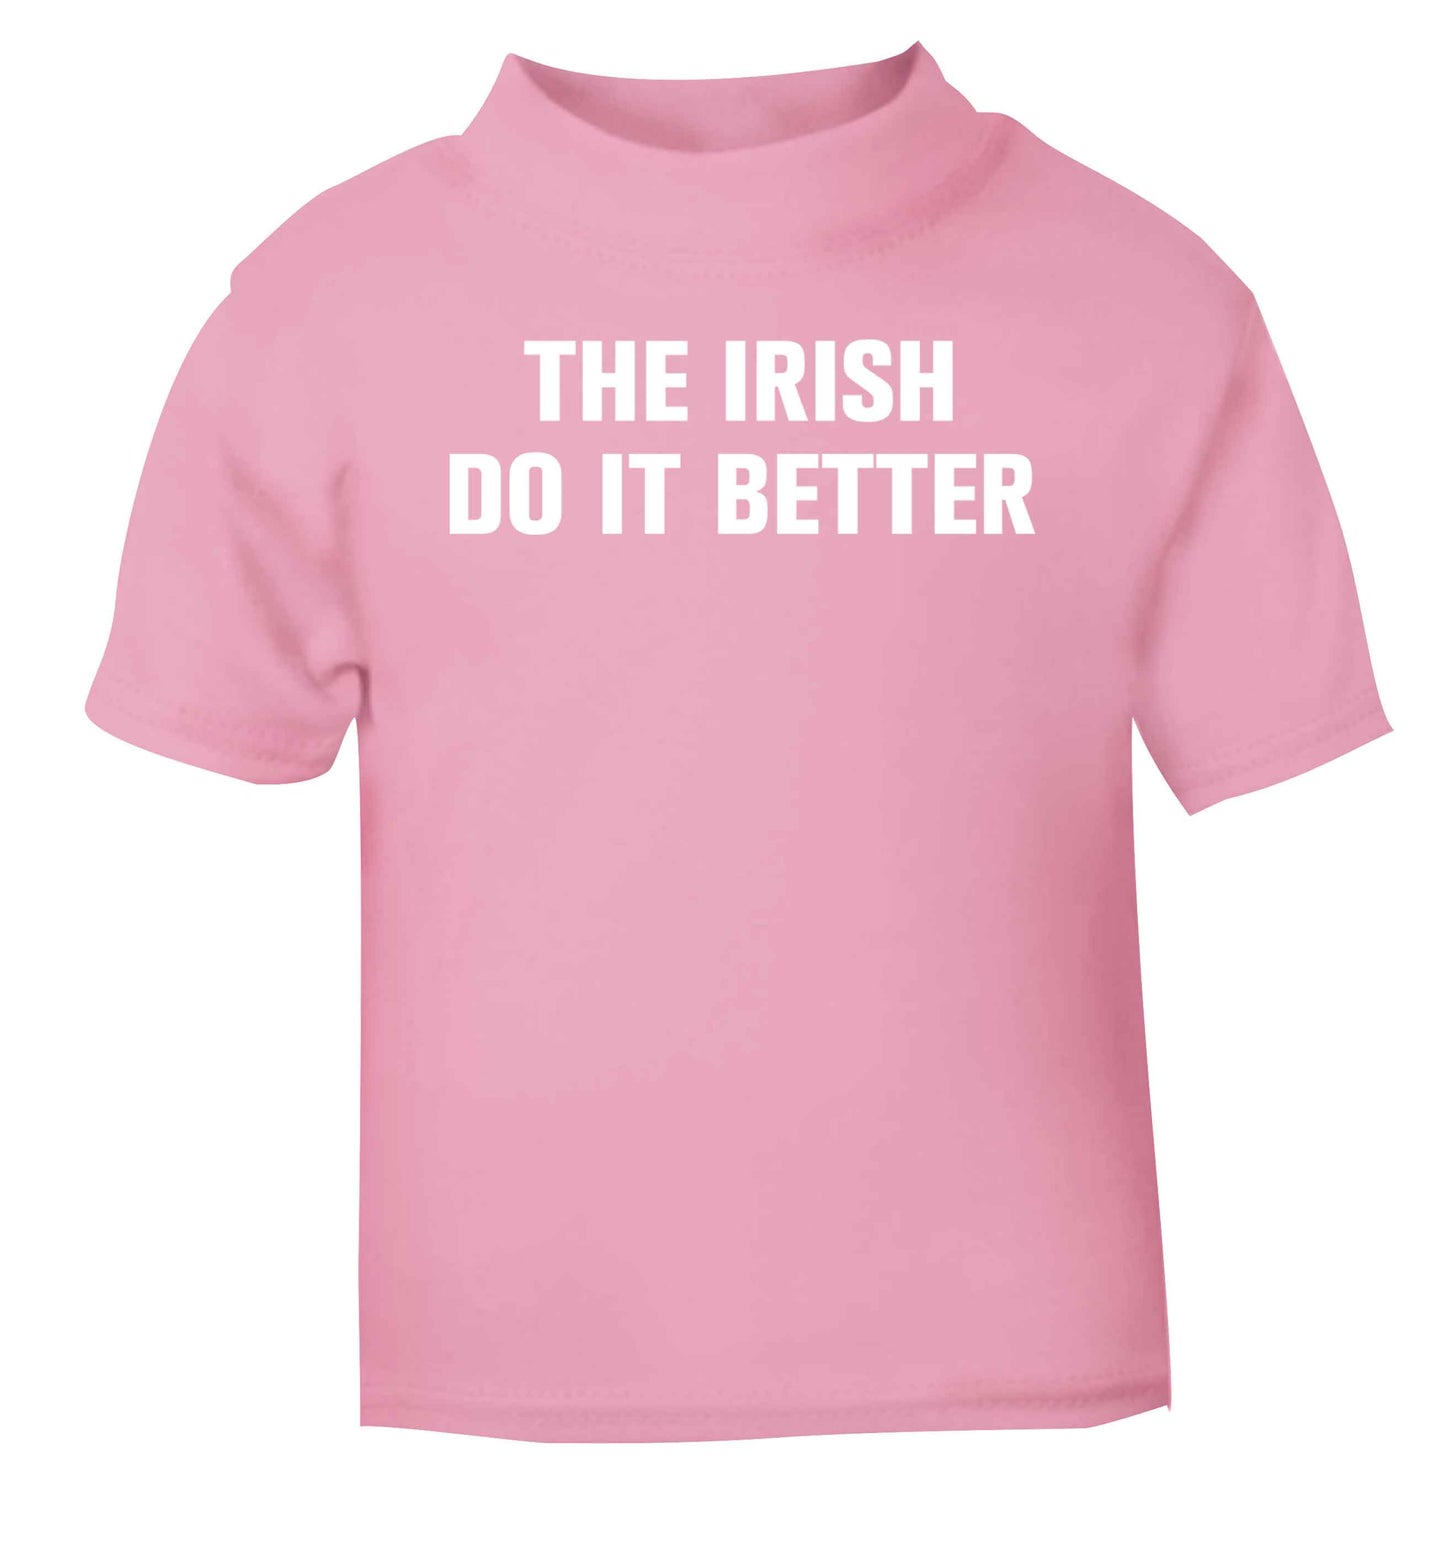 The Irish do it better light pink baby toddler Tshirt 2 Years